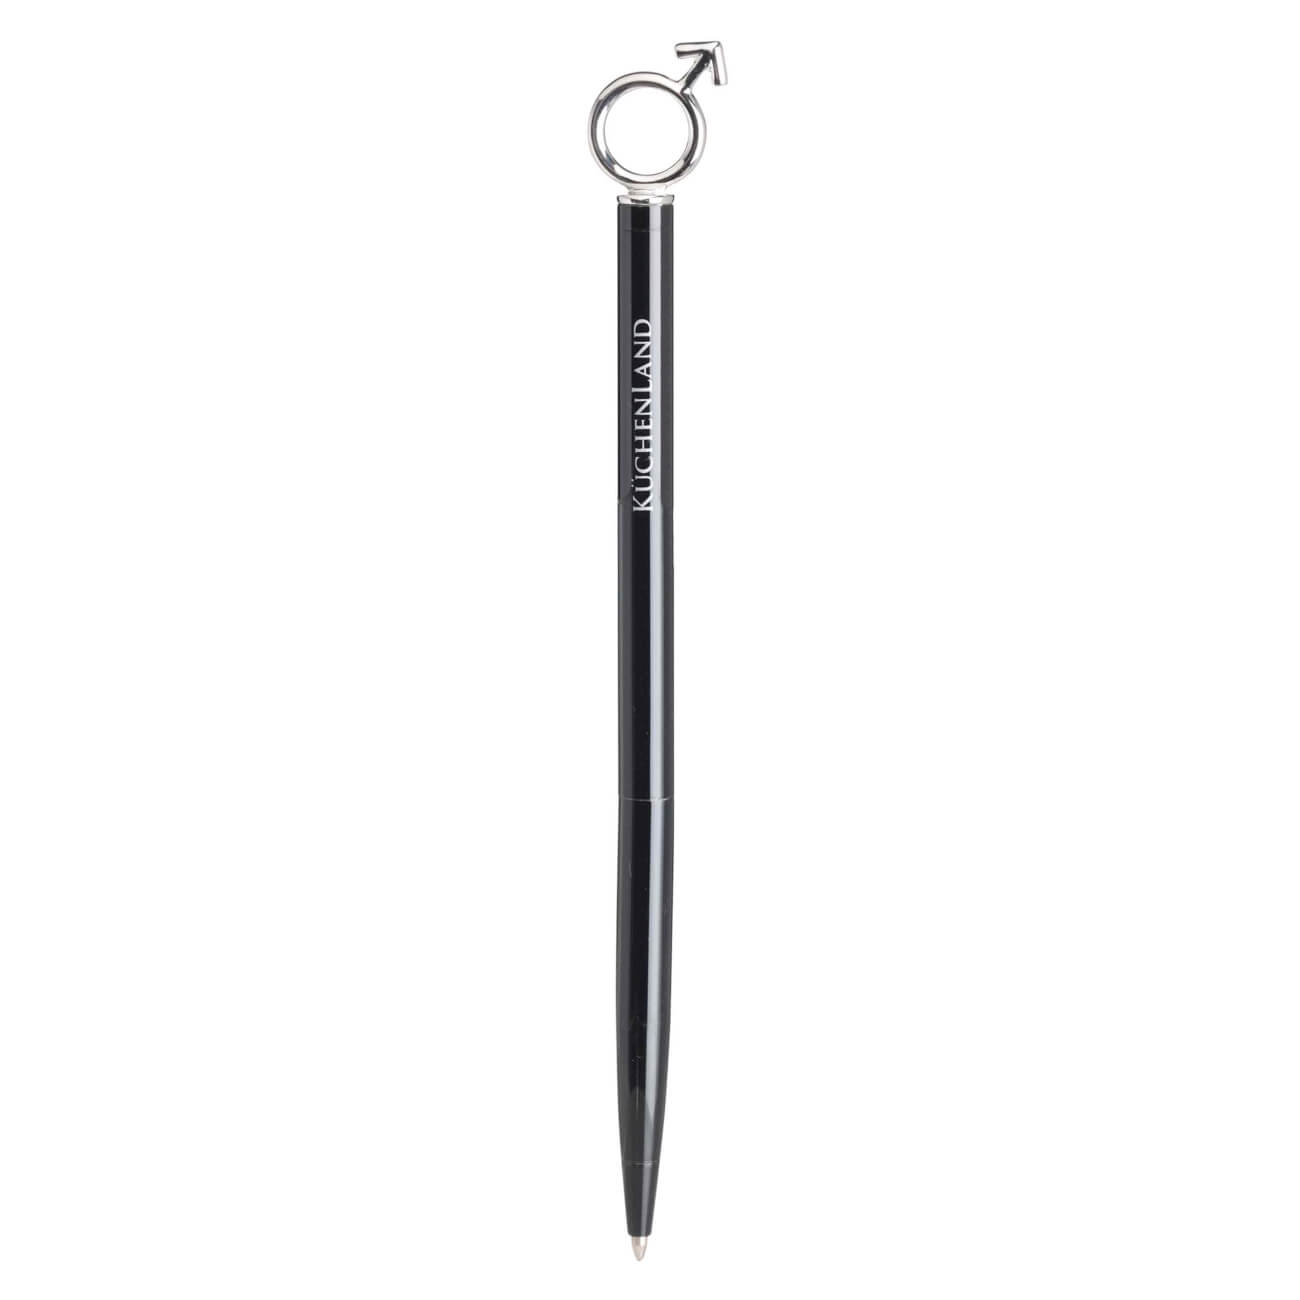 Ручка шариковая, 14 см, с фигуркой, металл, черная, Символ мужчины, Draw figure ручка шариковая подарочная поворотная в кожзам футляре